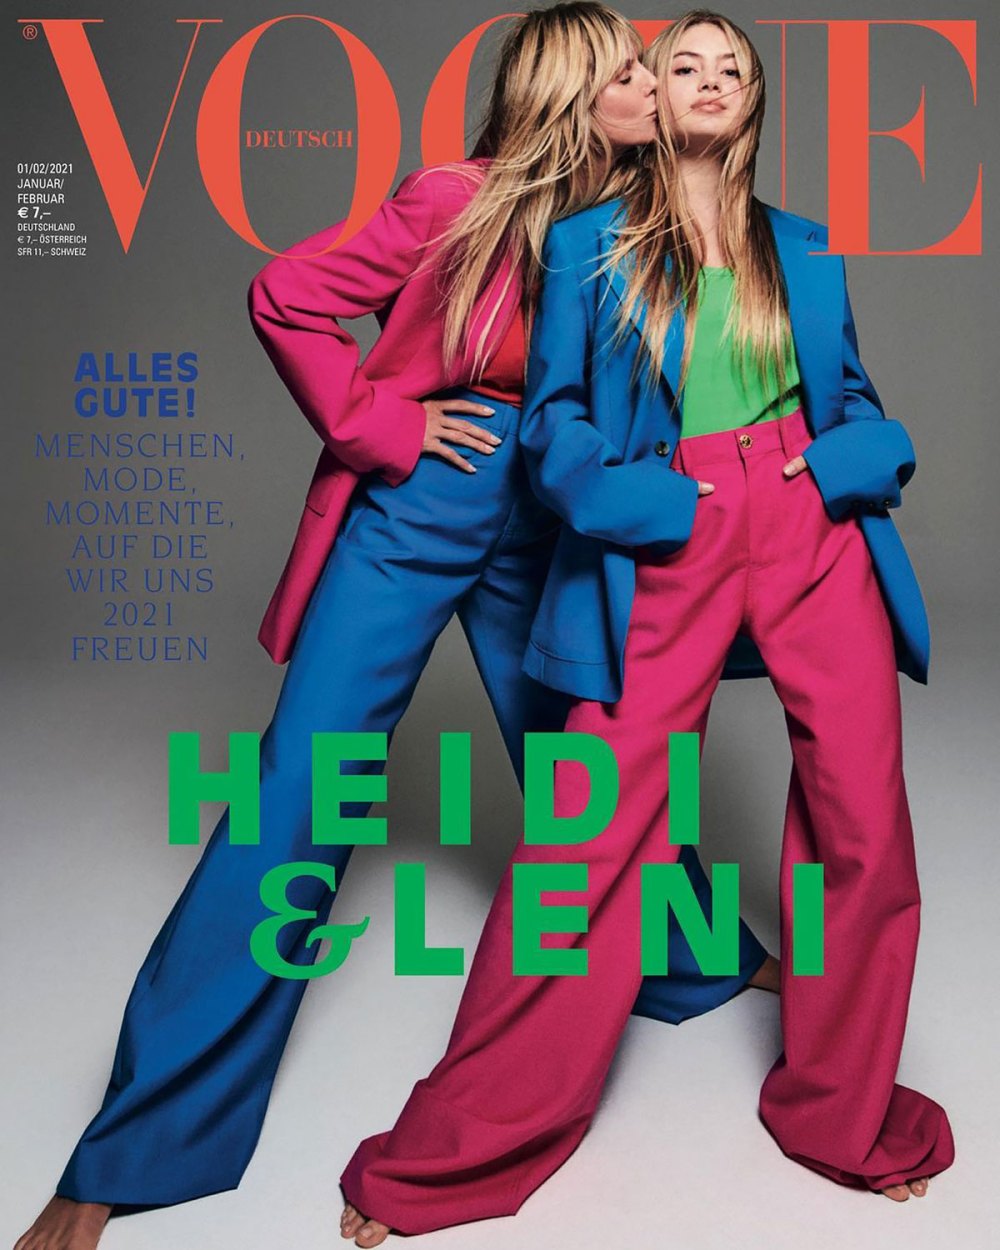 Heidi Klum's Daughter Makes Her Modeling Debut Alongside Her Mom